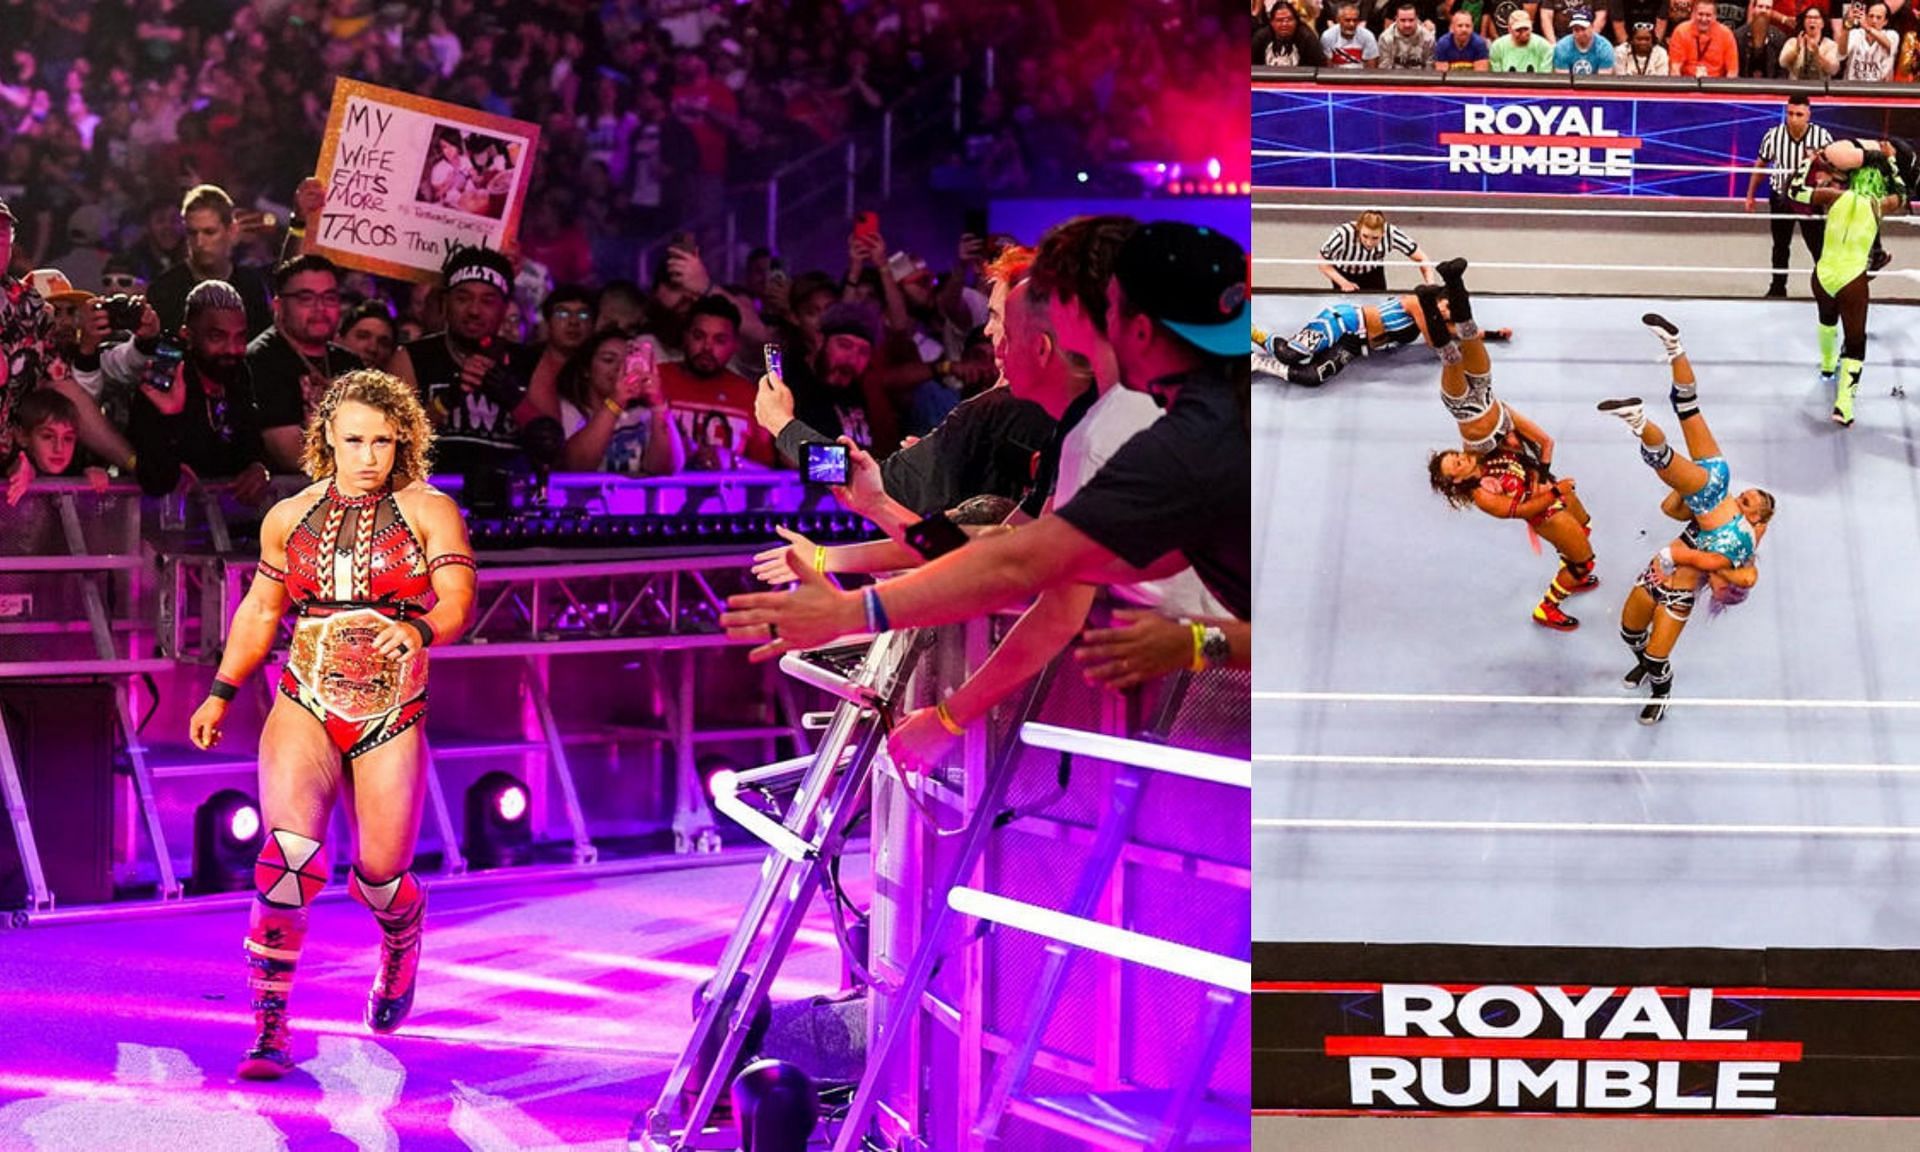 WWE Royal Rumble में अन्य कंपनी की विमेंस चैंपियन ने की धमाकेदार एंट्री 